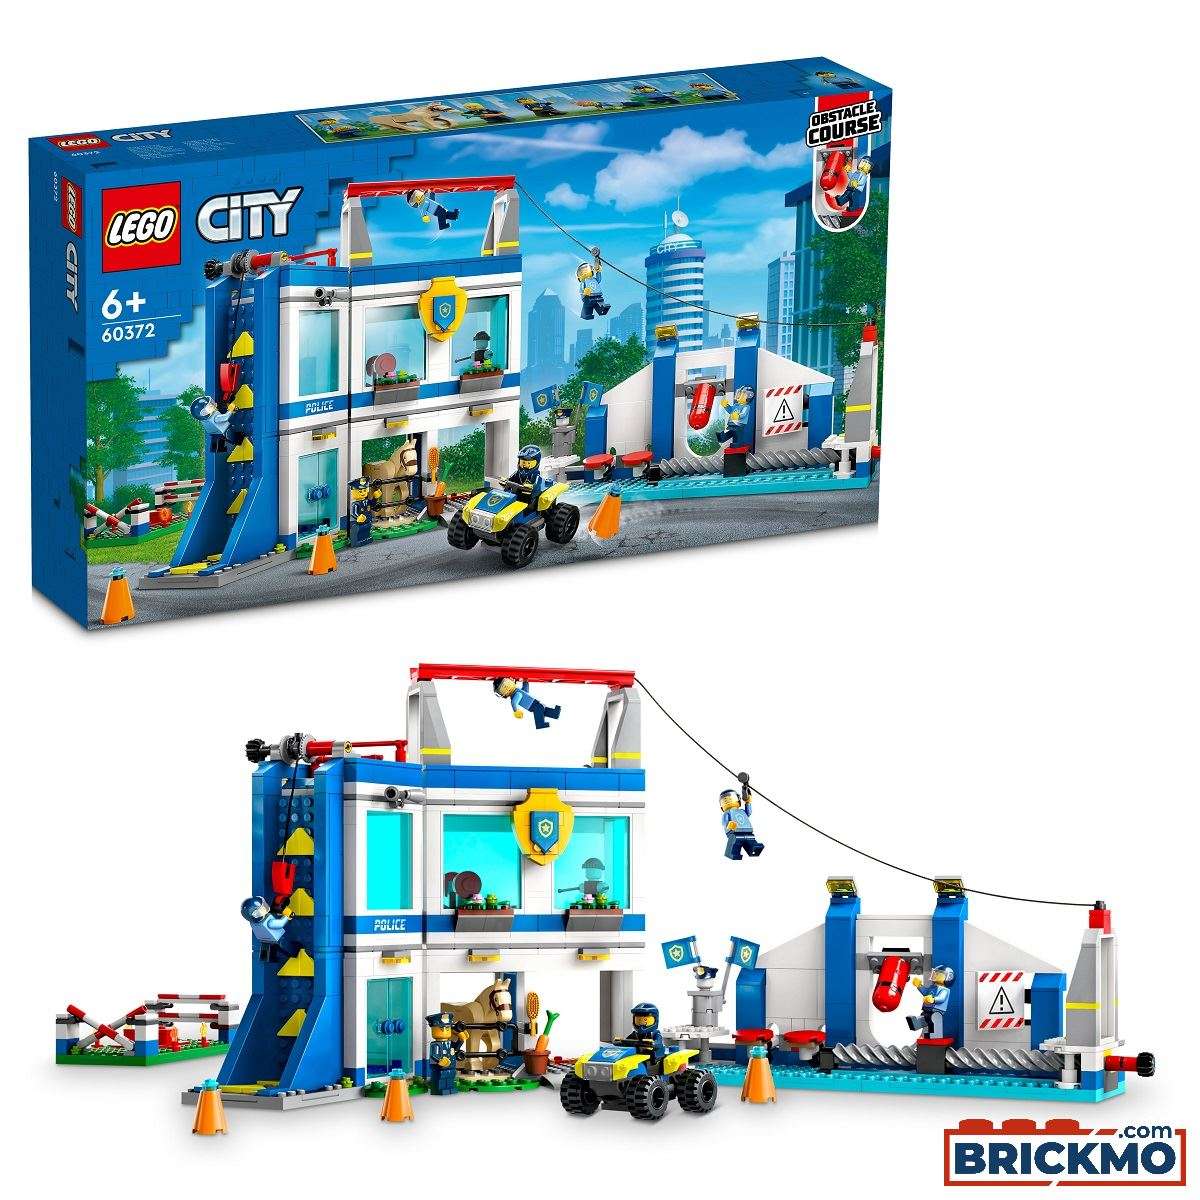 LEGO City 60372 Polizeischule 60372